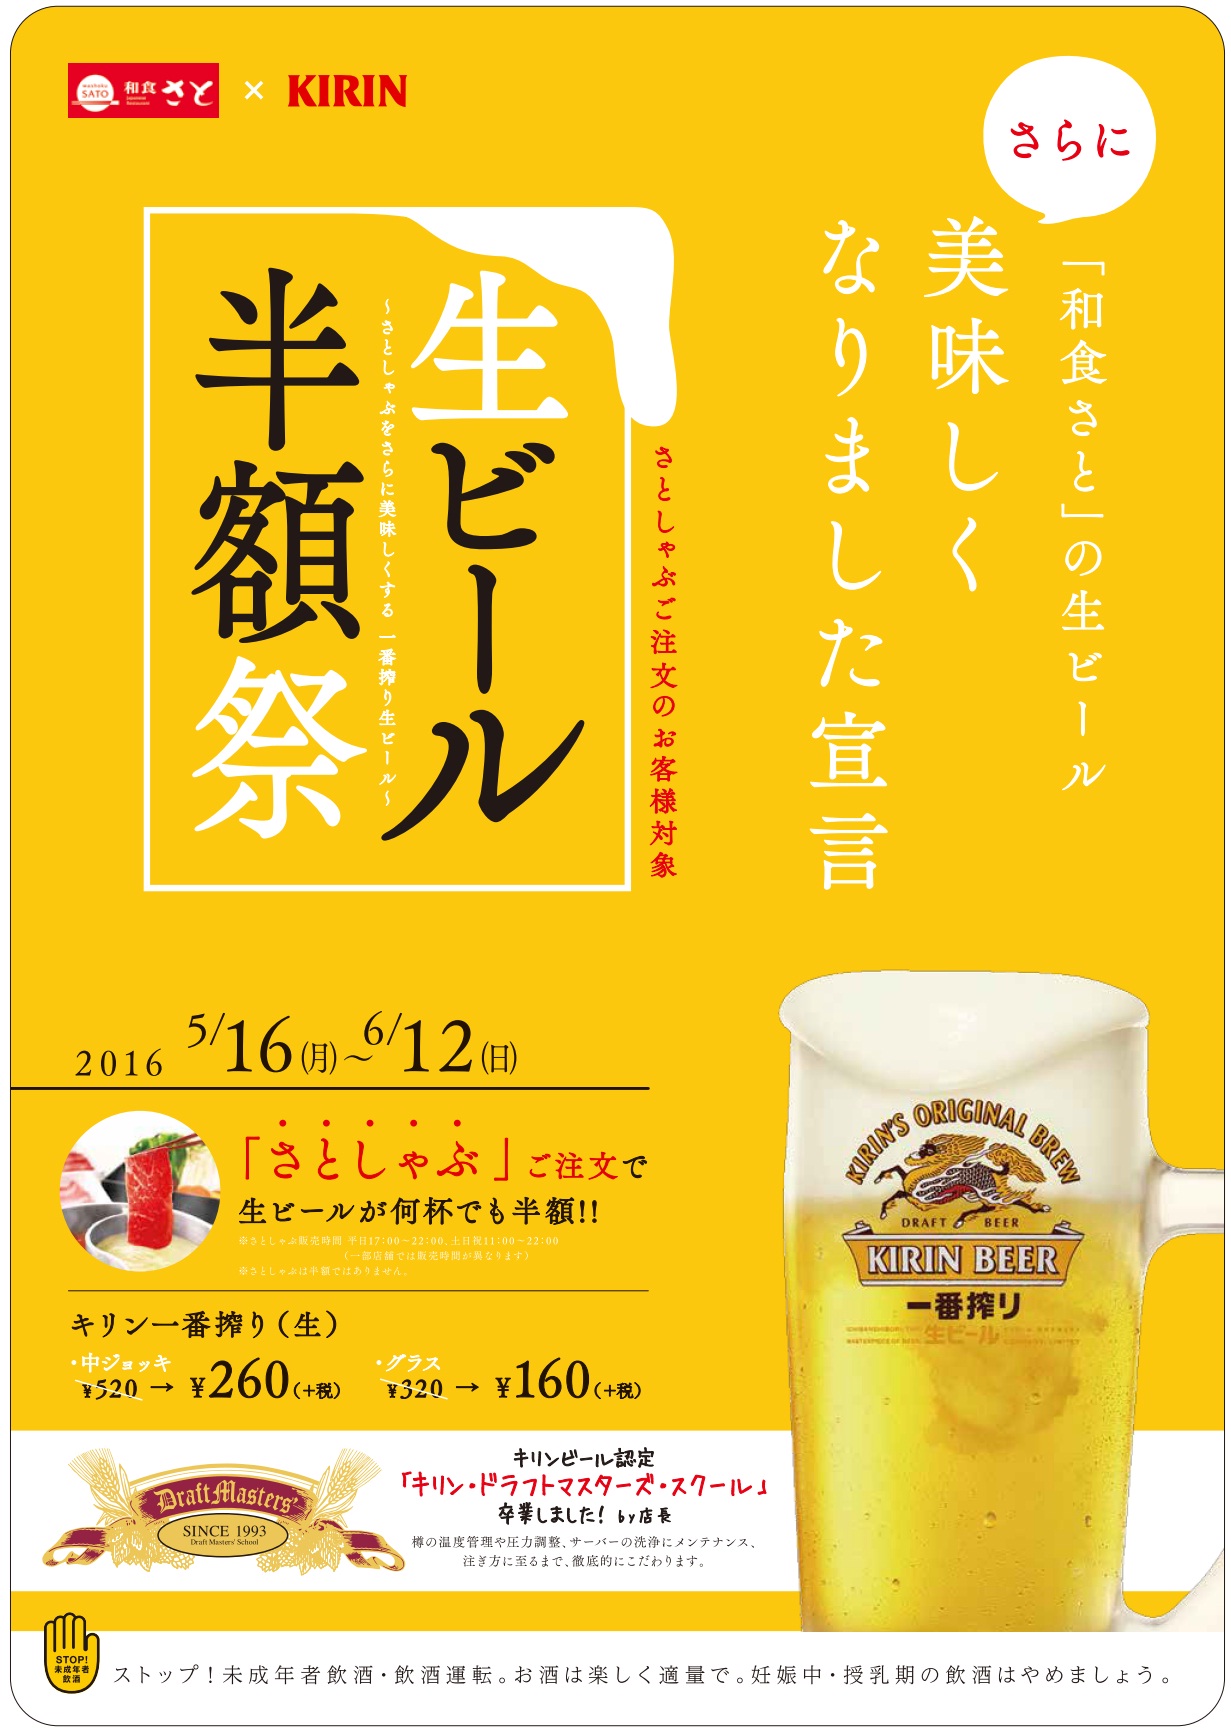 和食さと Kirin 生ビールキャンペーン 生ビール 半額祭 サトフードサービス株式会社のプレスリリース